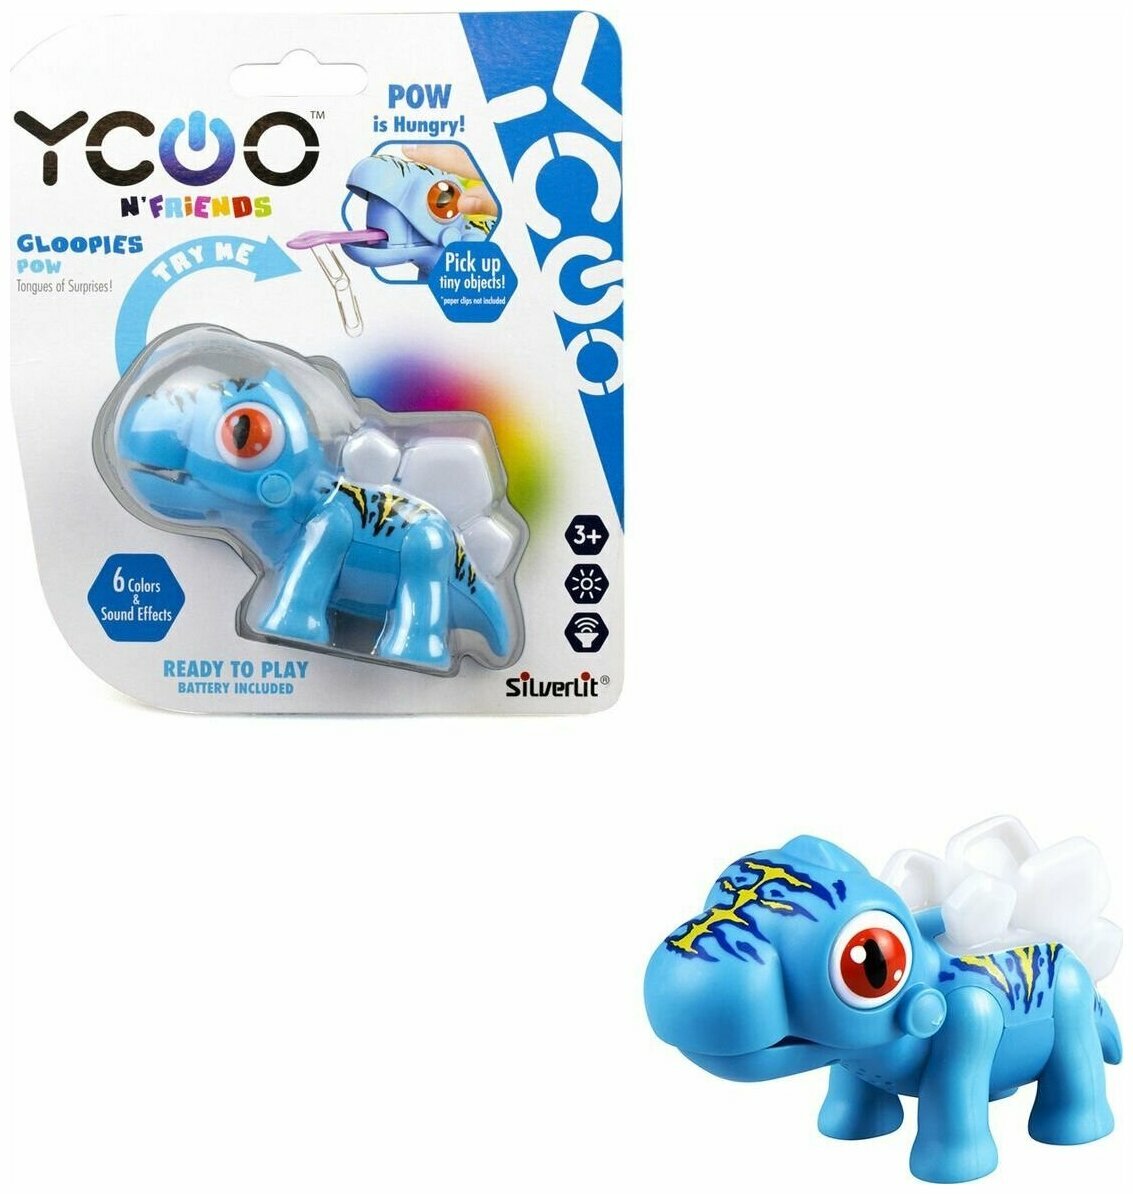 Интерактивная игрушка Ycoo Питомцы Динозавр Глупи, 88581-3, синий